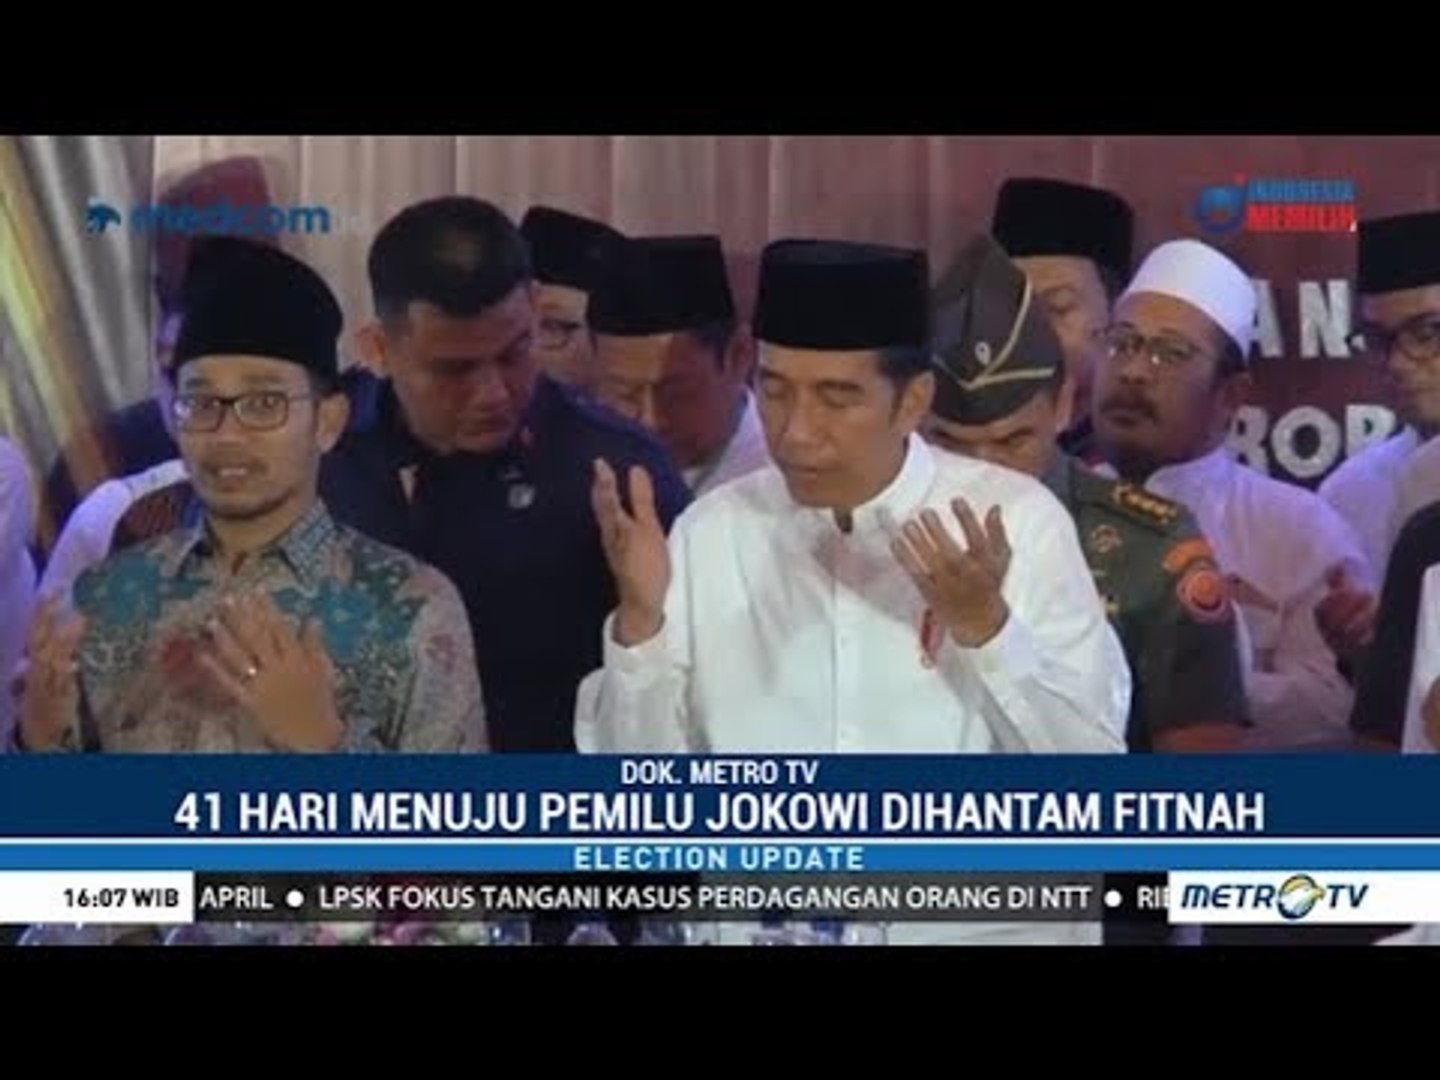 ⁣Musuh Jokowi di Pilpres adalah Fitnah